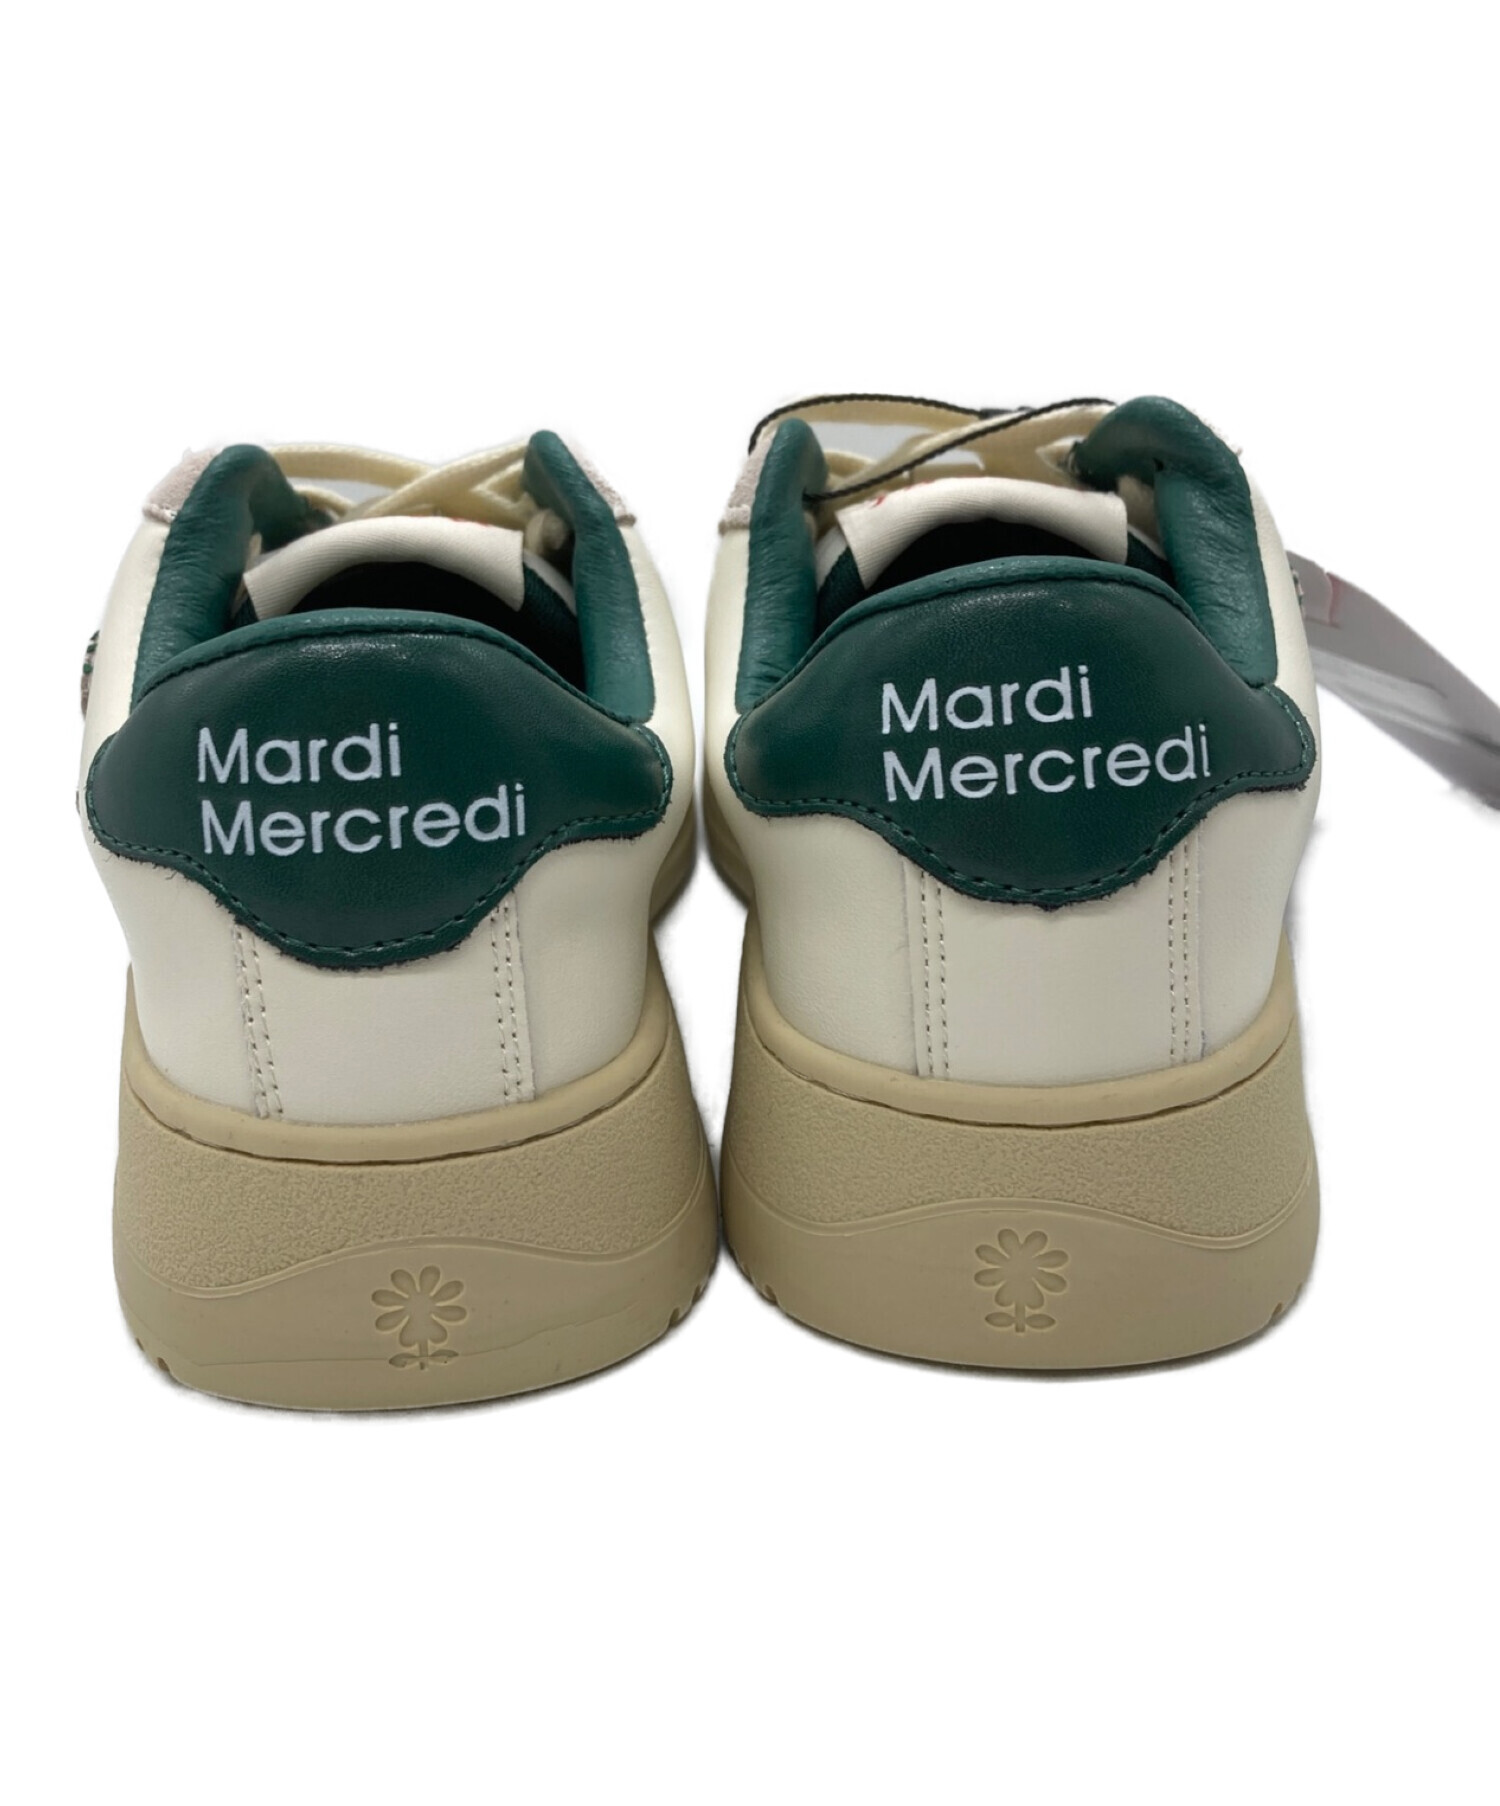 Mardi Mercredi (マルディメクルディ) ローカットスニーカー ホワイト×グリーン サイズ:EU 37